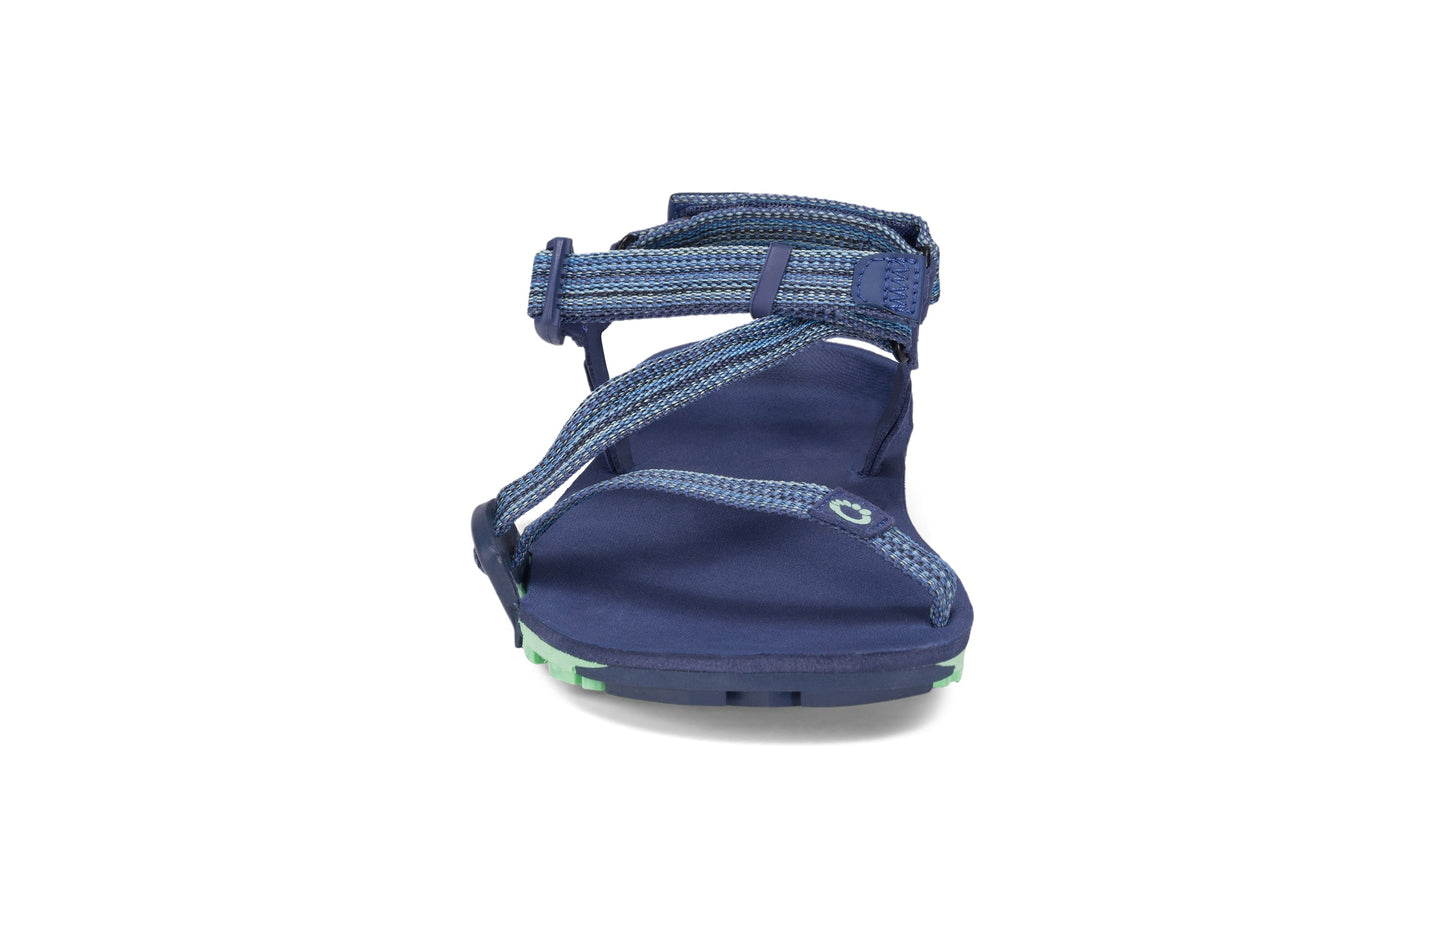 Xero Shoes Z-Trail EV Women barfods sandaler til kvinder i farven blue indigo, forfra